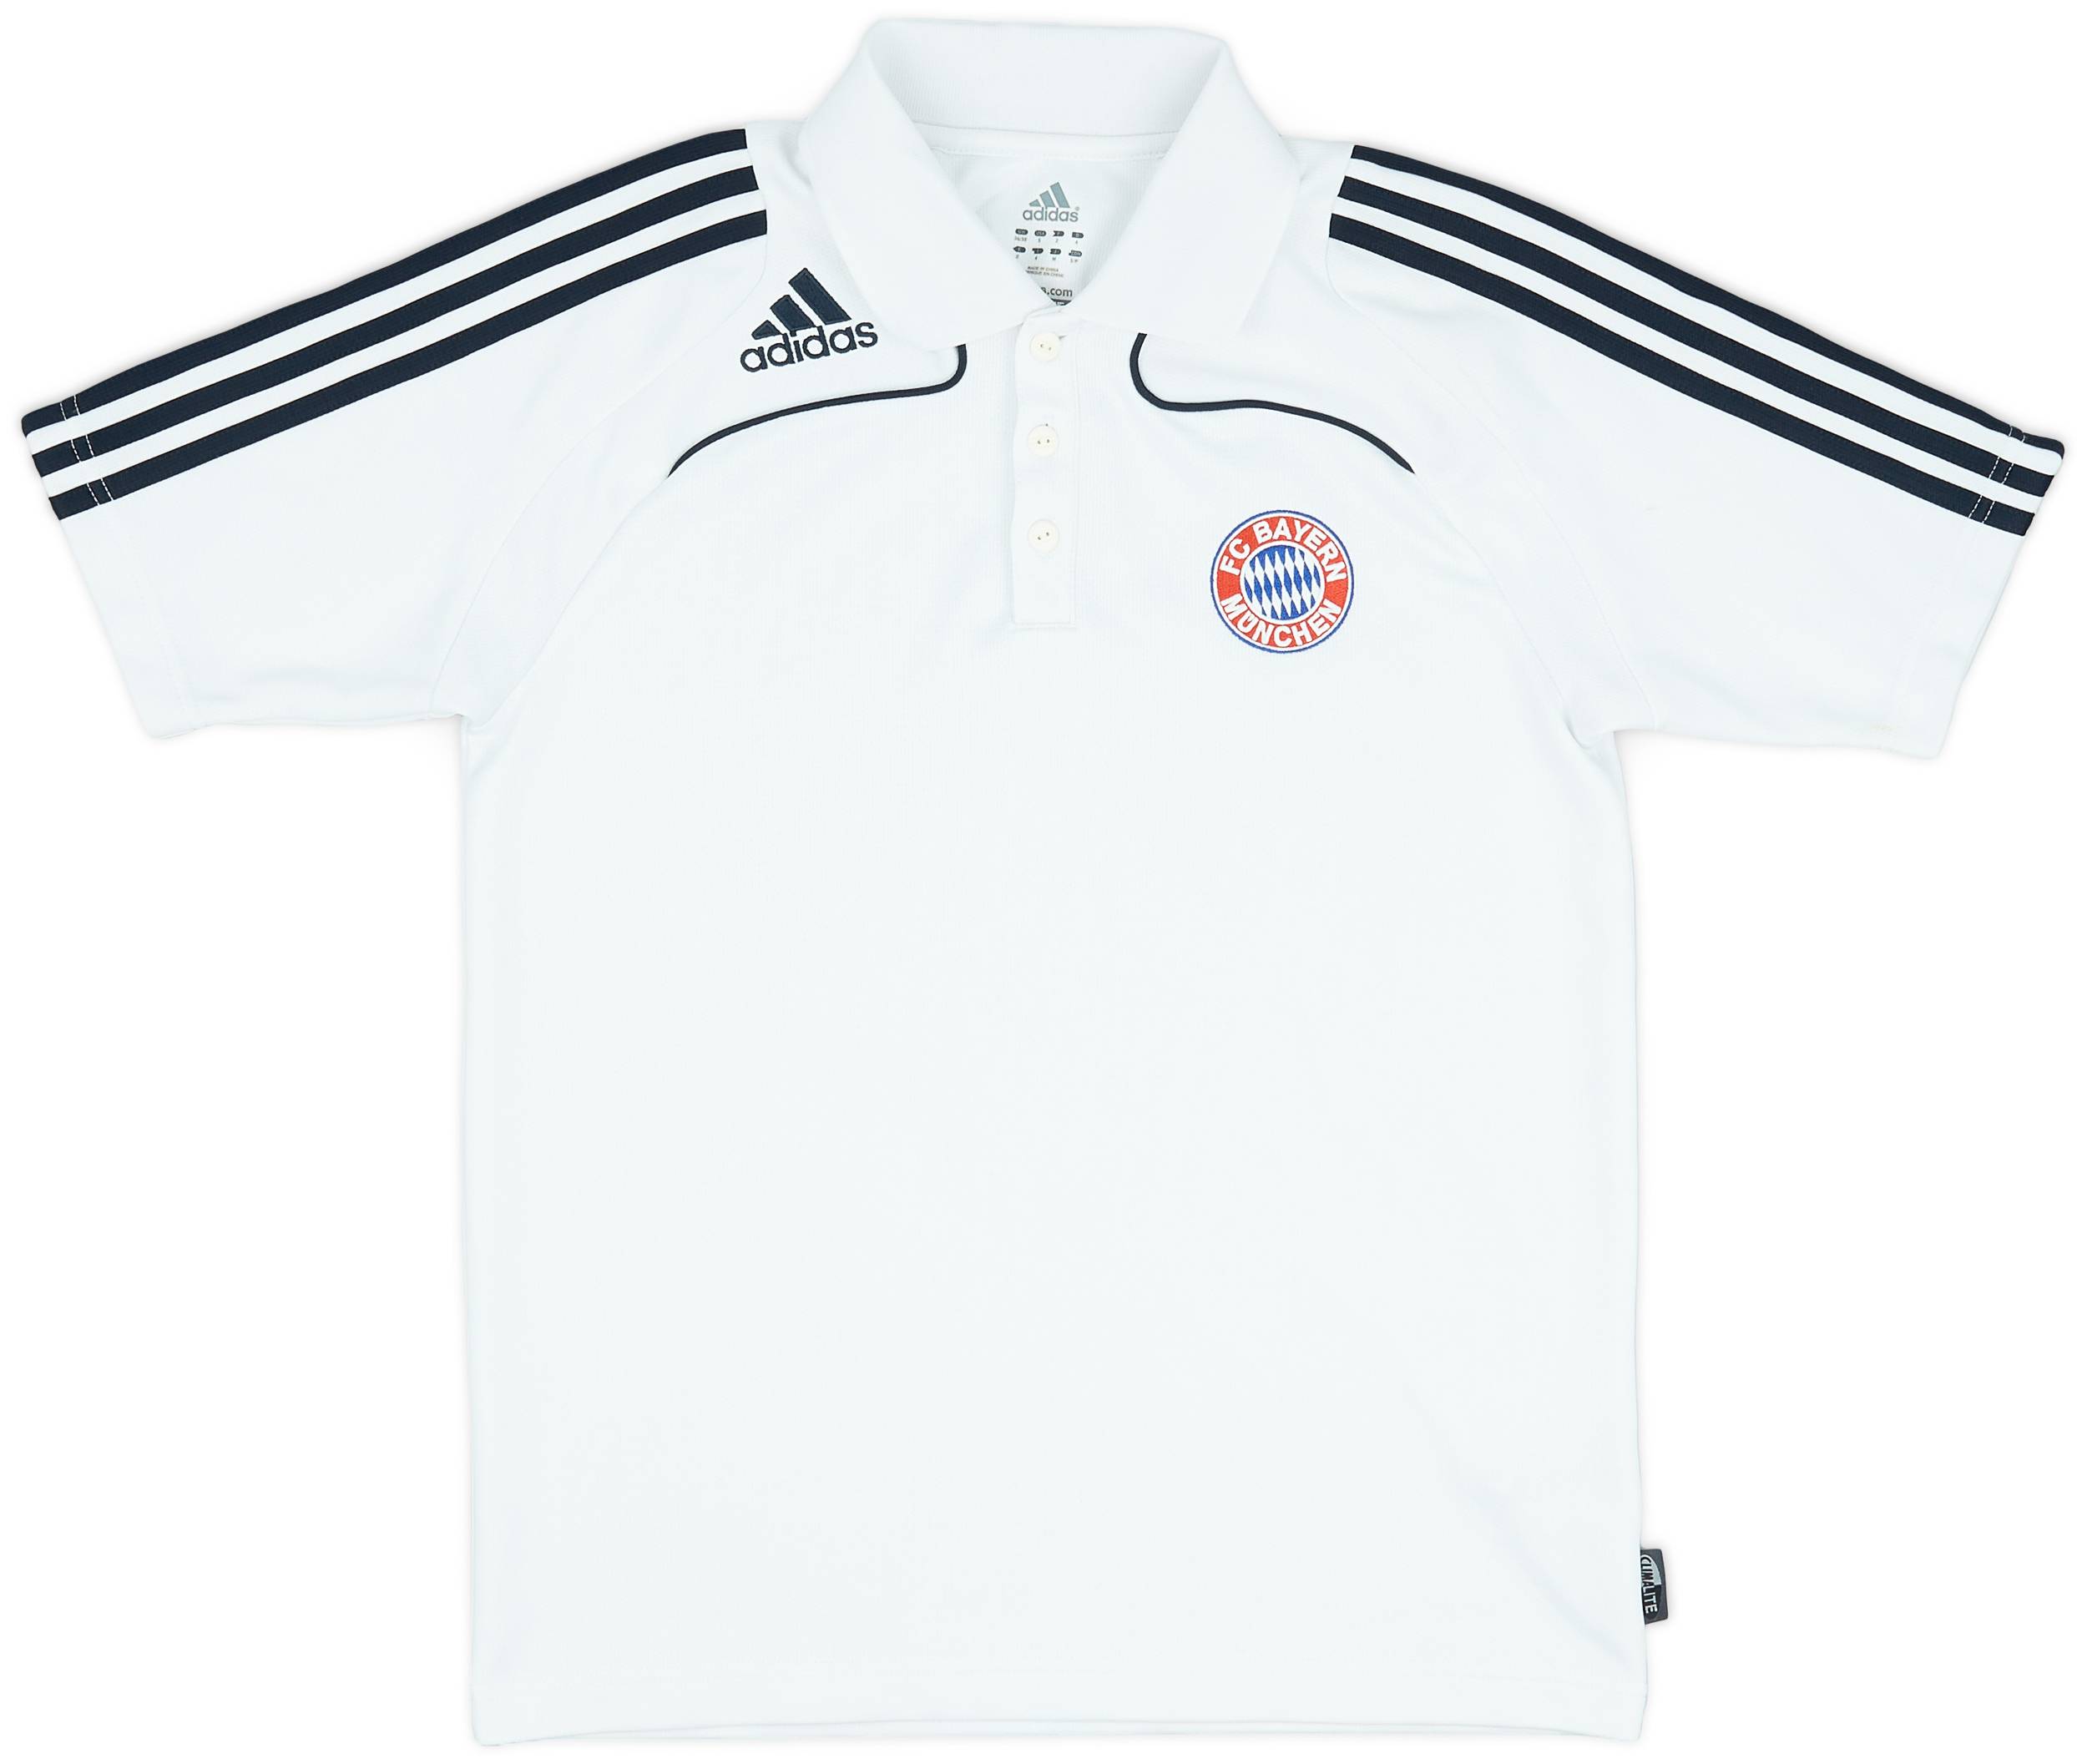 2008-09 Bayern Munich adidas Polo Shirt - 9/10 - (S)